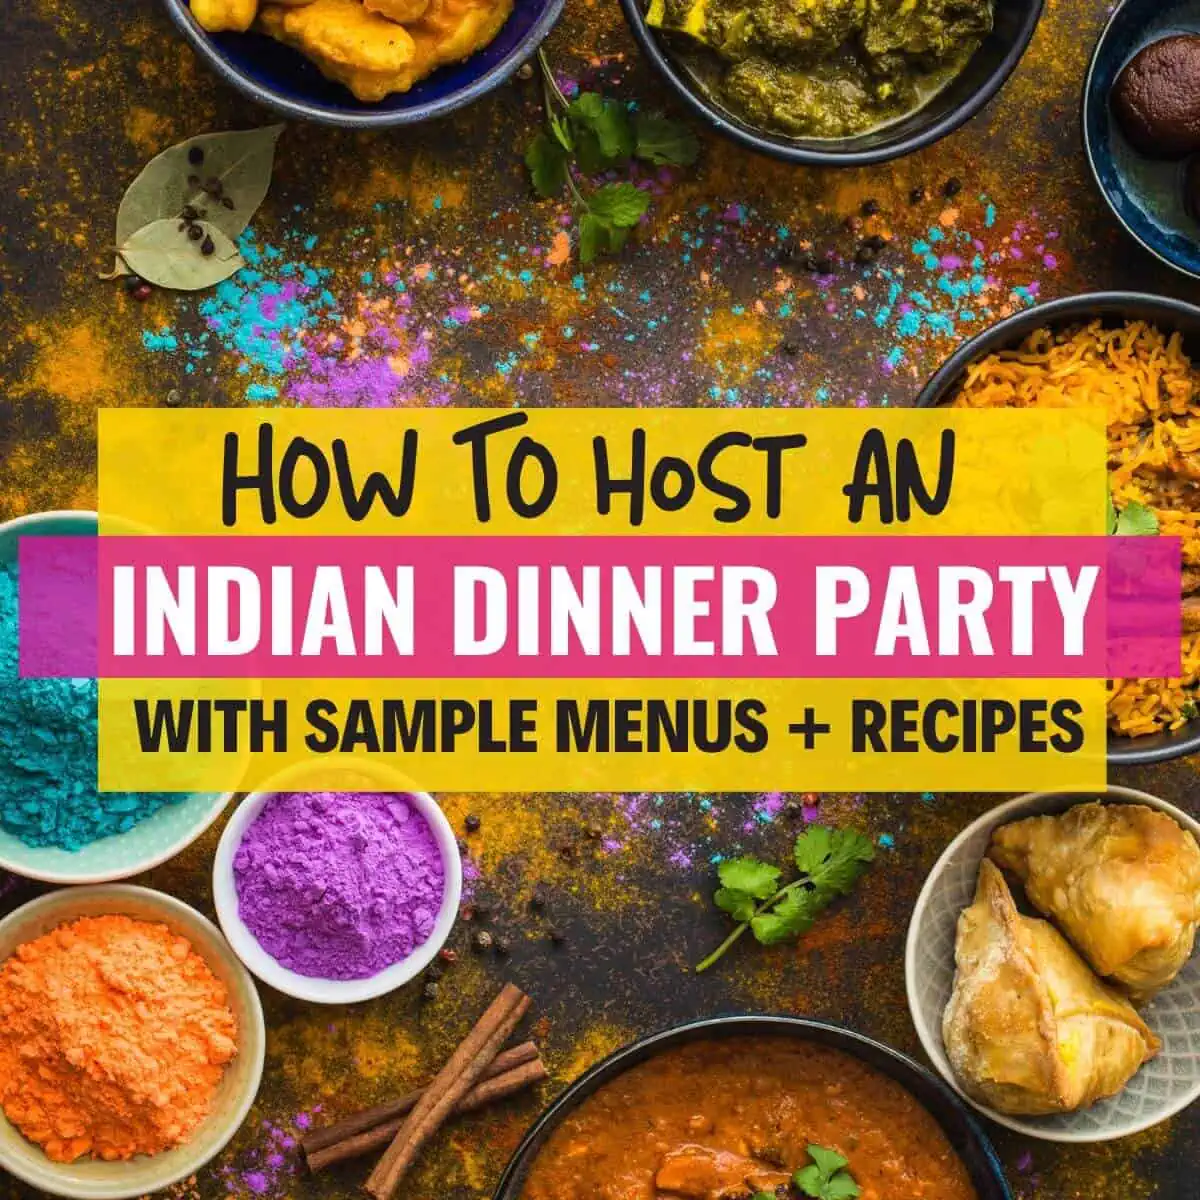 Un'immagine con tanto cibo indiano e con una didascalia che recita come organizzare una cena indiana - ottenere idee di menu e ricette